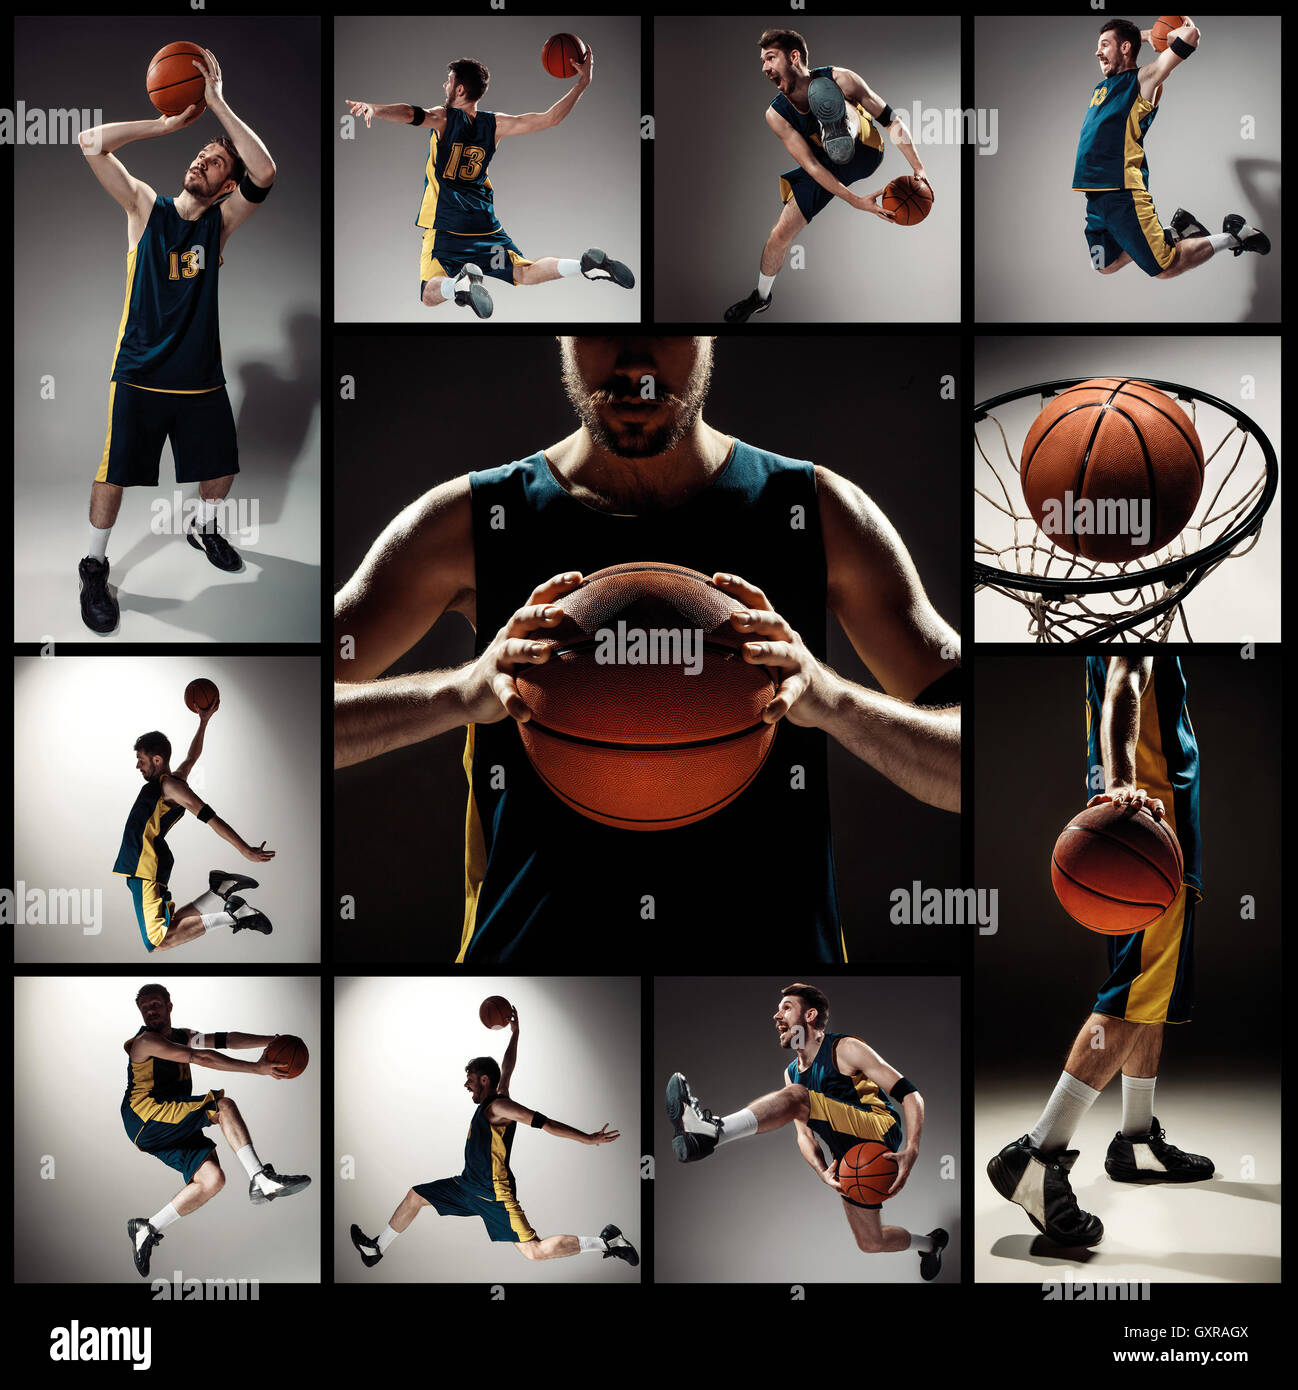 Descubrir 50+ imagen collage de basquetbol